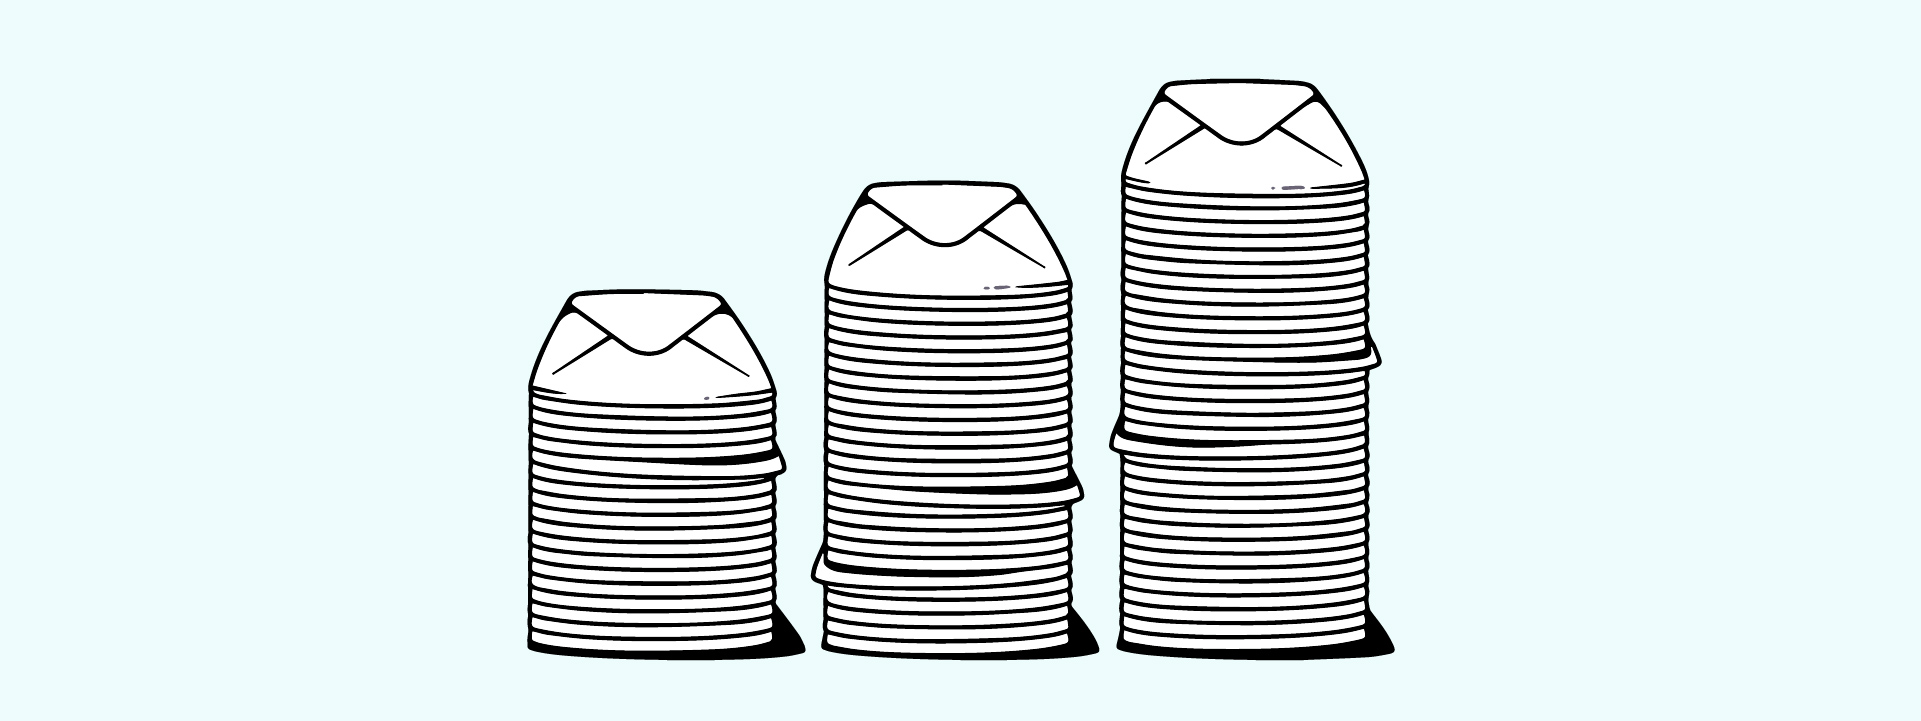 Digital illustration showing stacks of envelopes